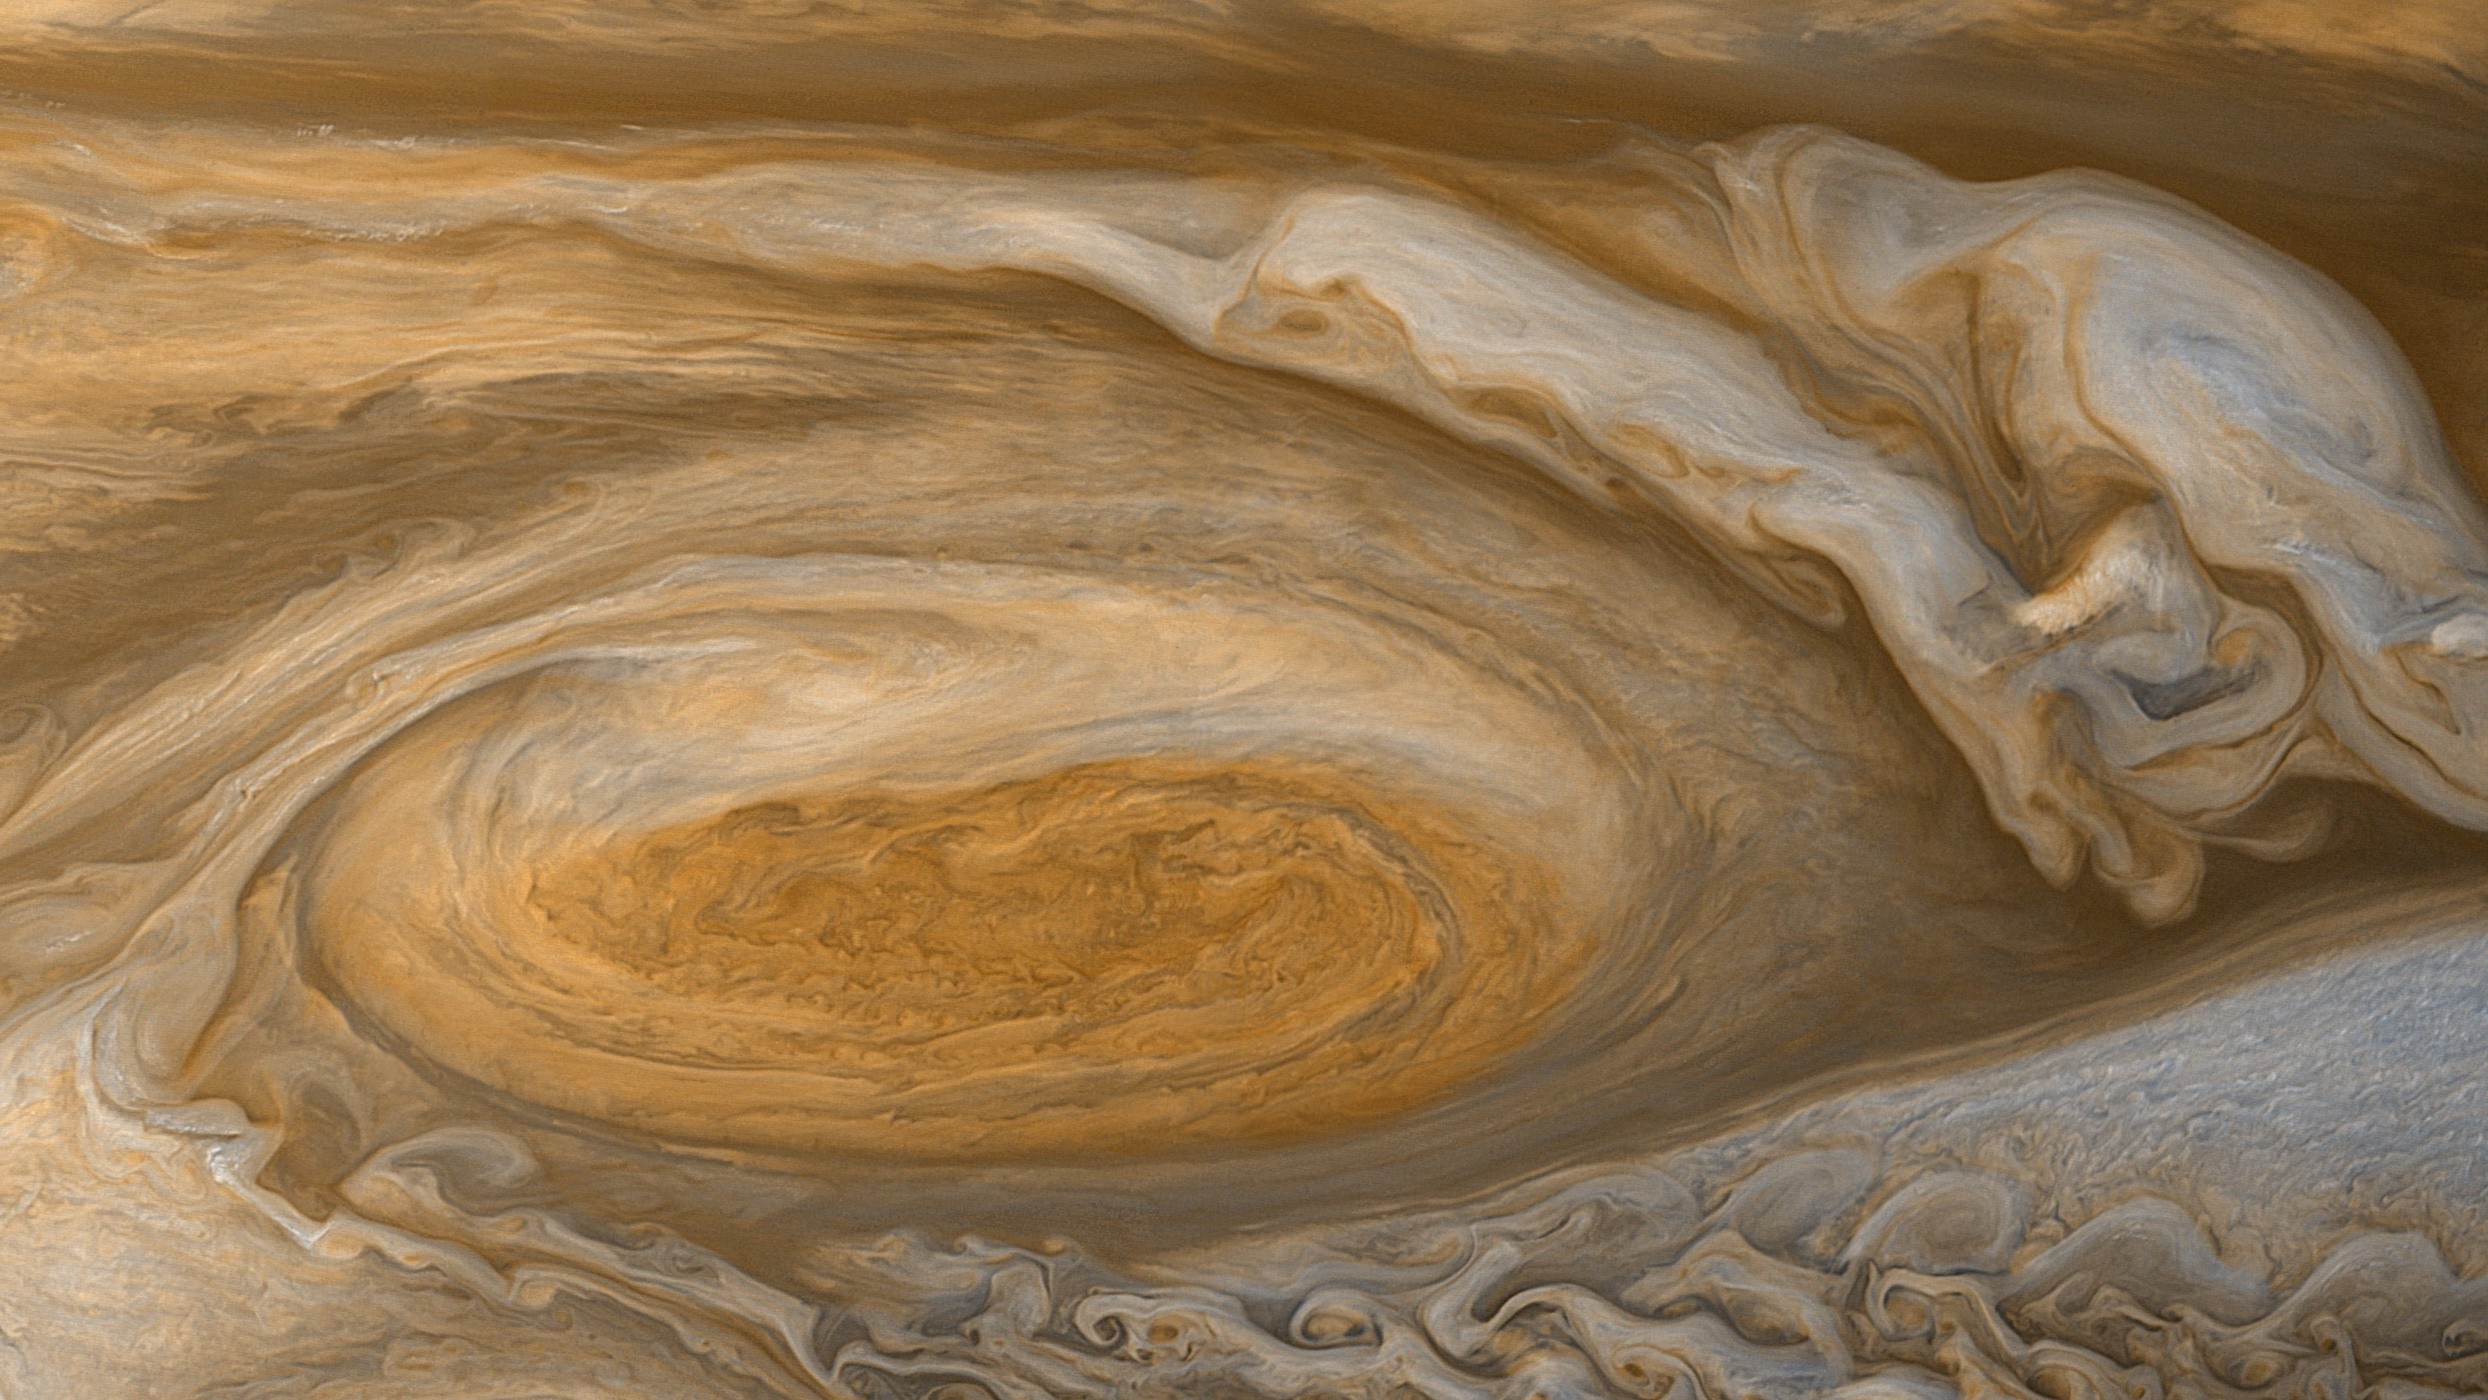 Jupiter, Red Spot, Planet Wallpaper